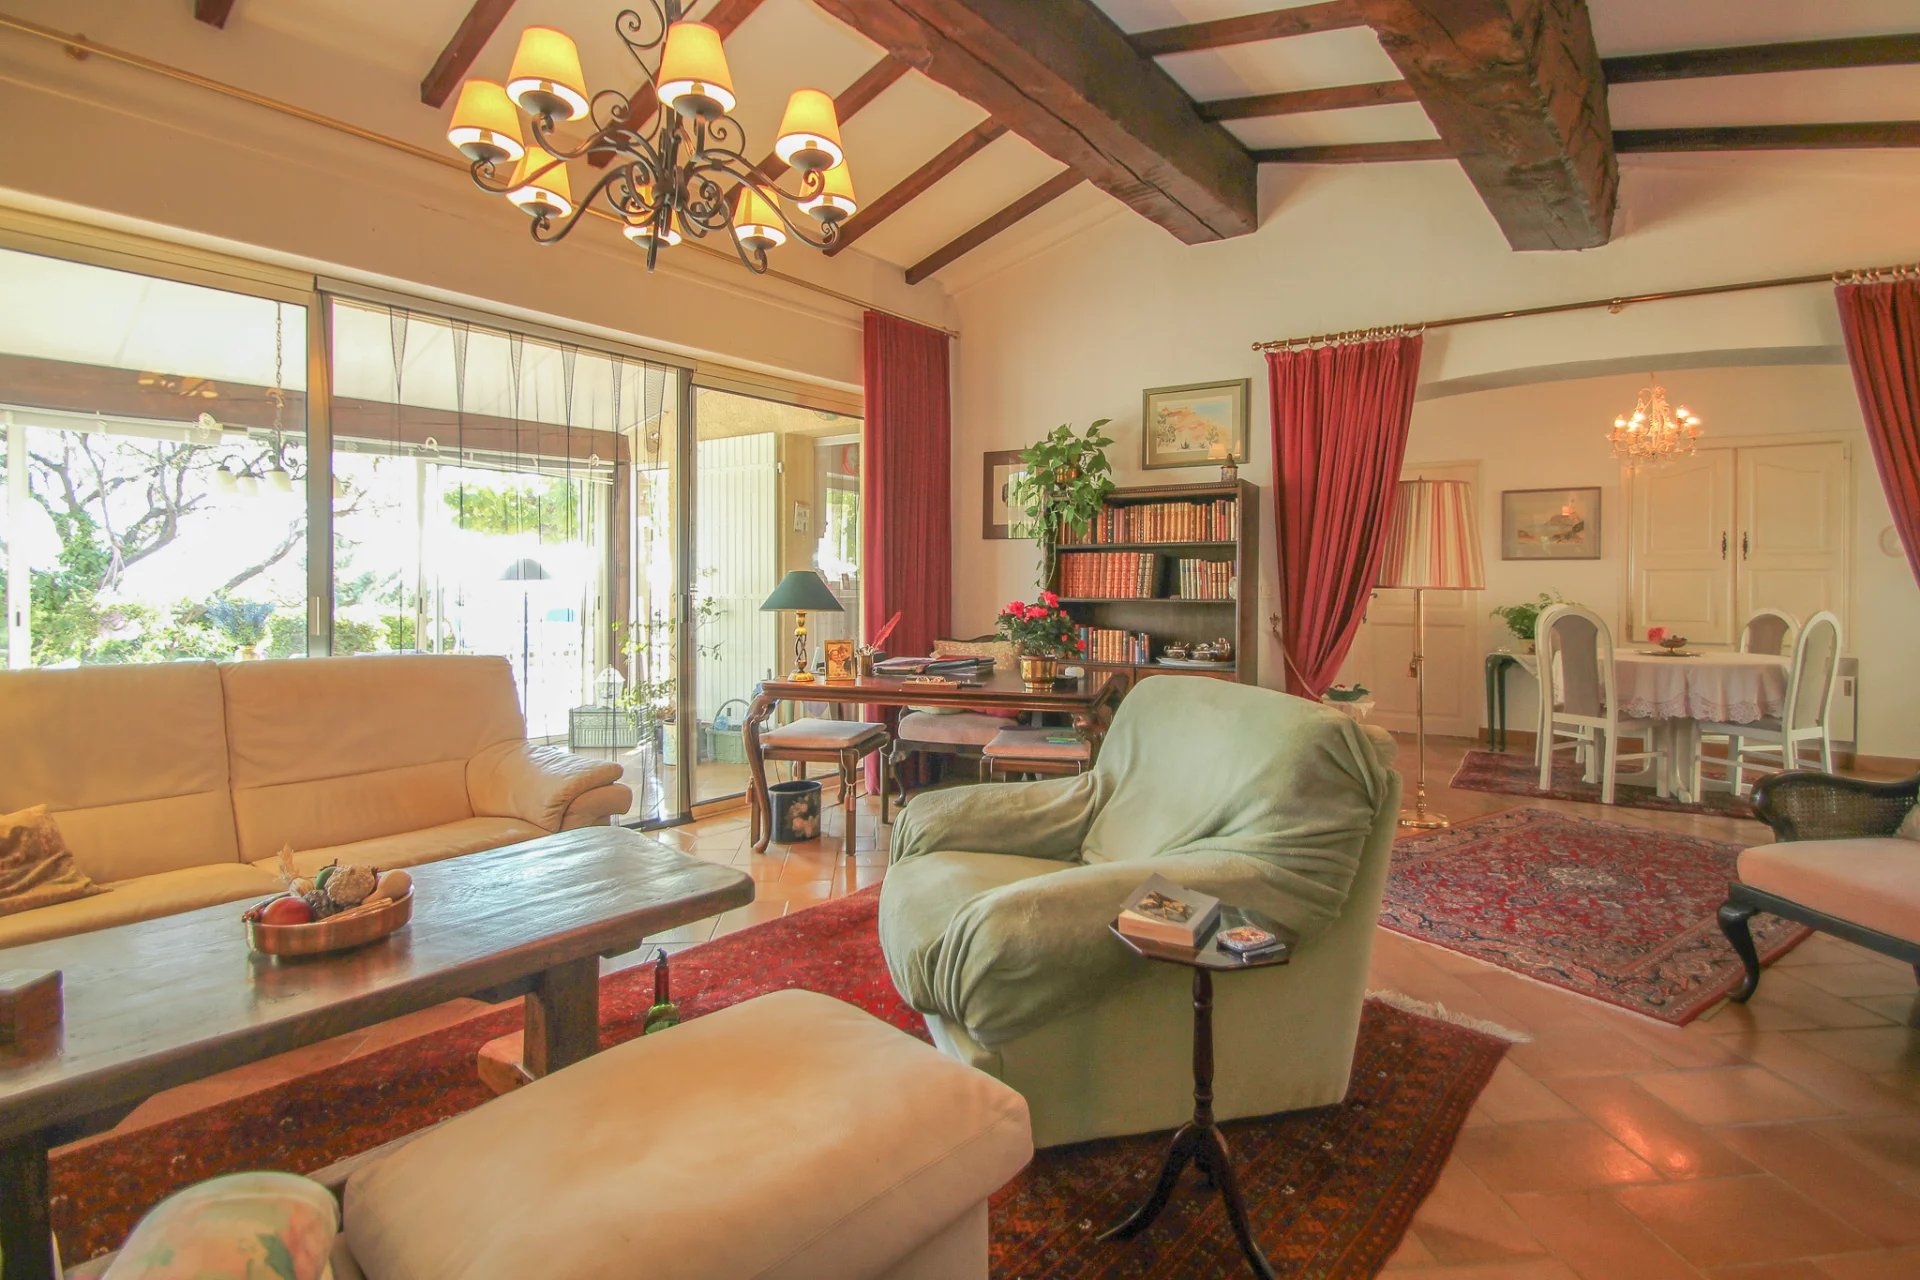 Belle villa de plain pied avec une vue panoramique nichée dans la magnifique campagne provençale